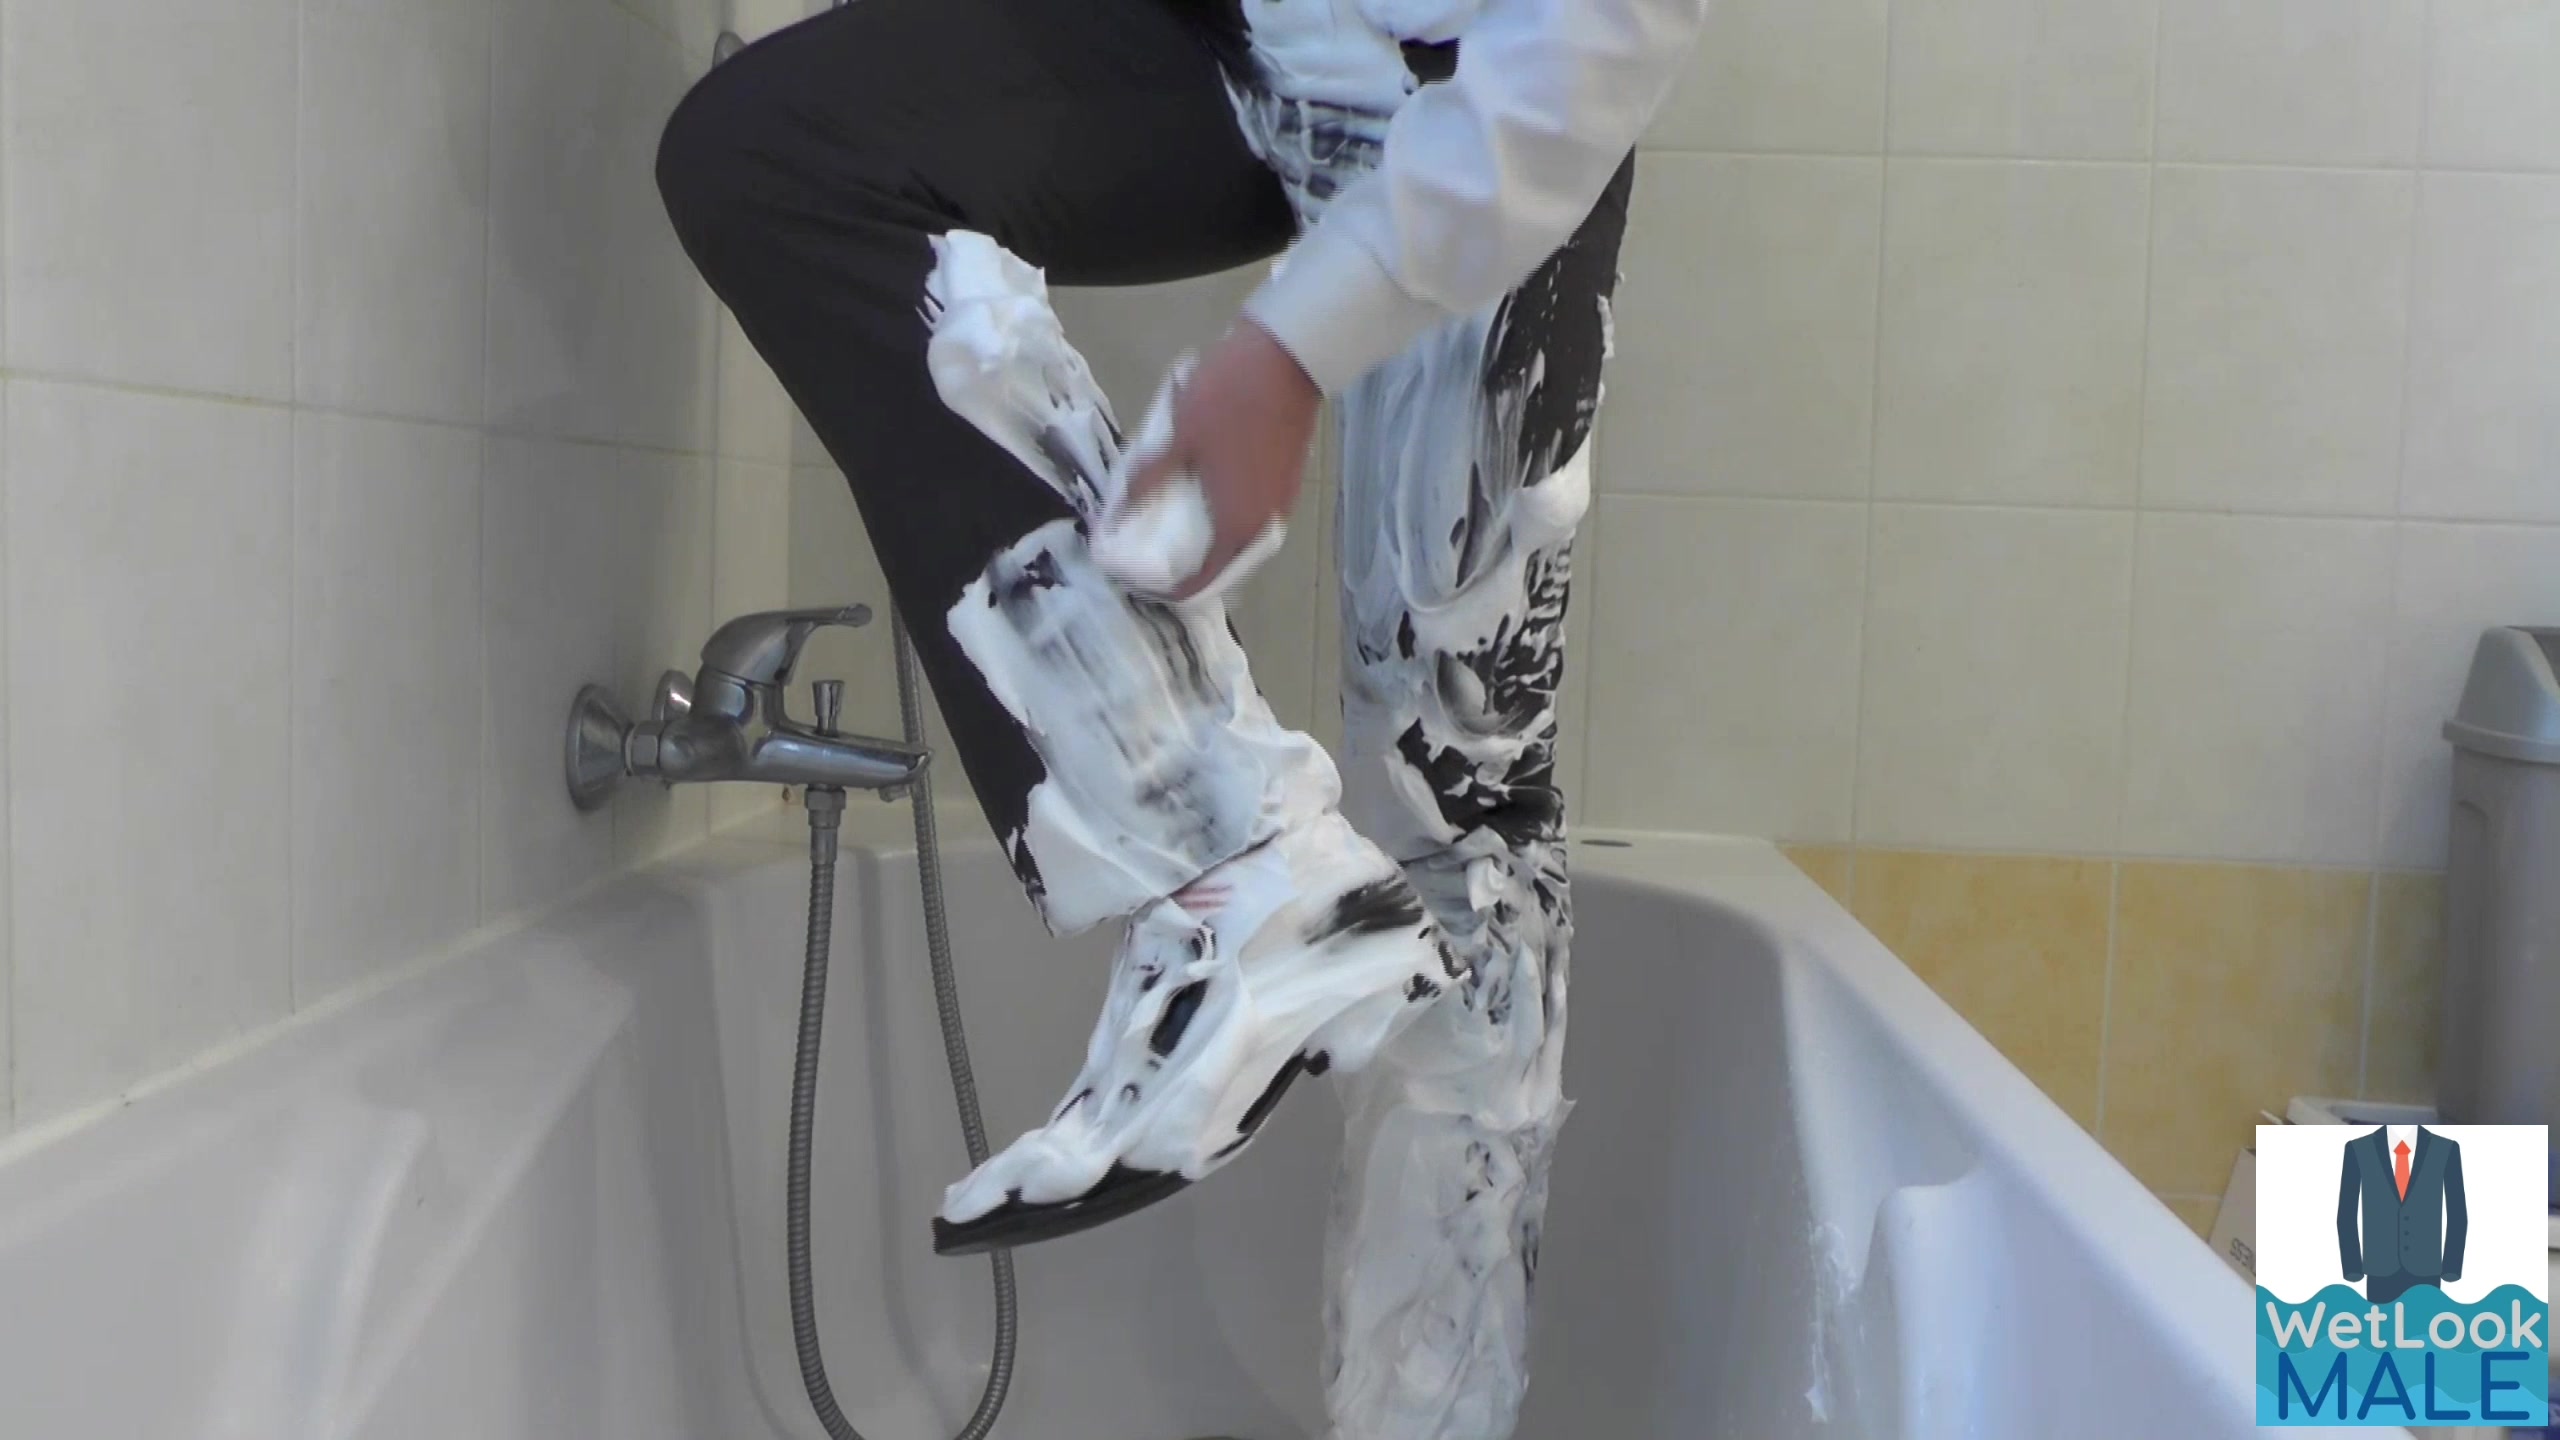 Shaving foam on suit